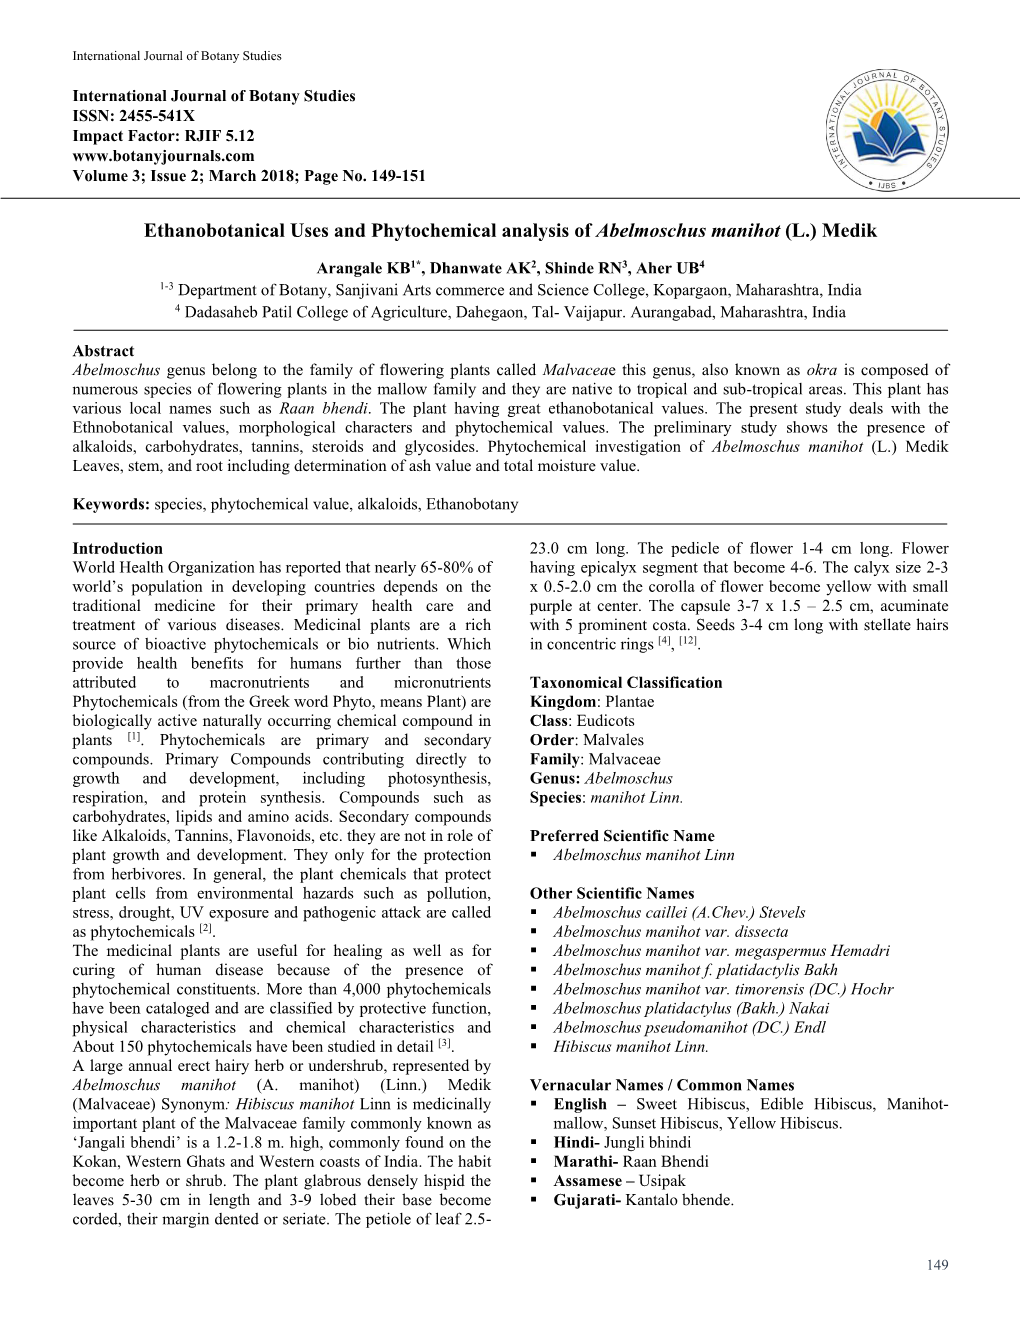 Ethanobotanical Uses and Phytochemical Analysis of Abelmoschus Manihot (L.) Medik